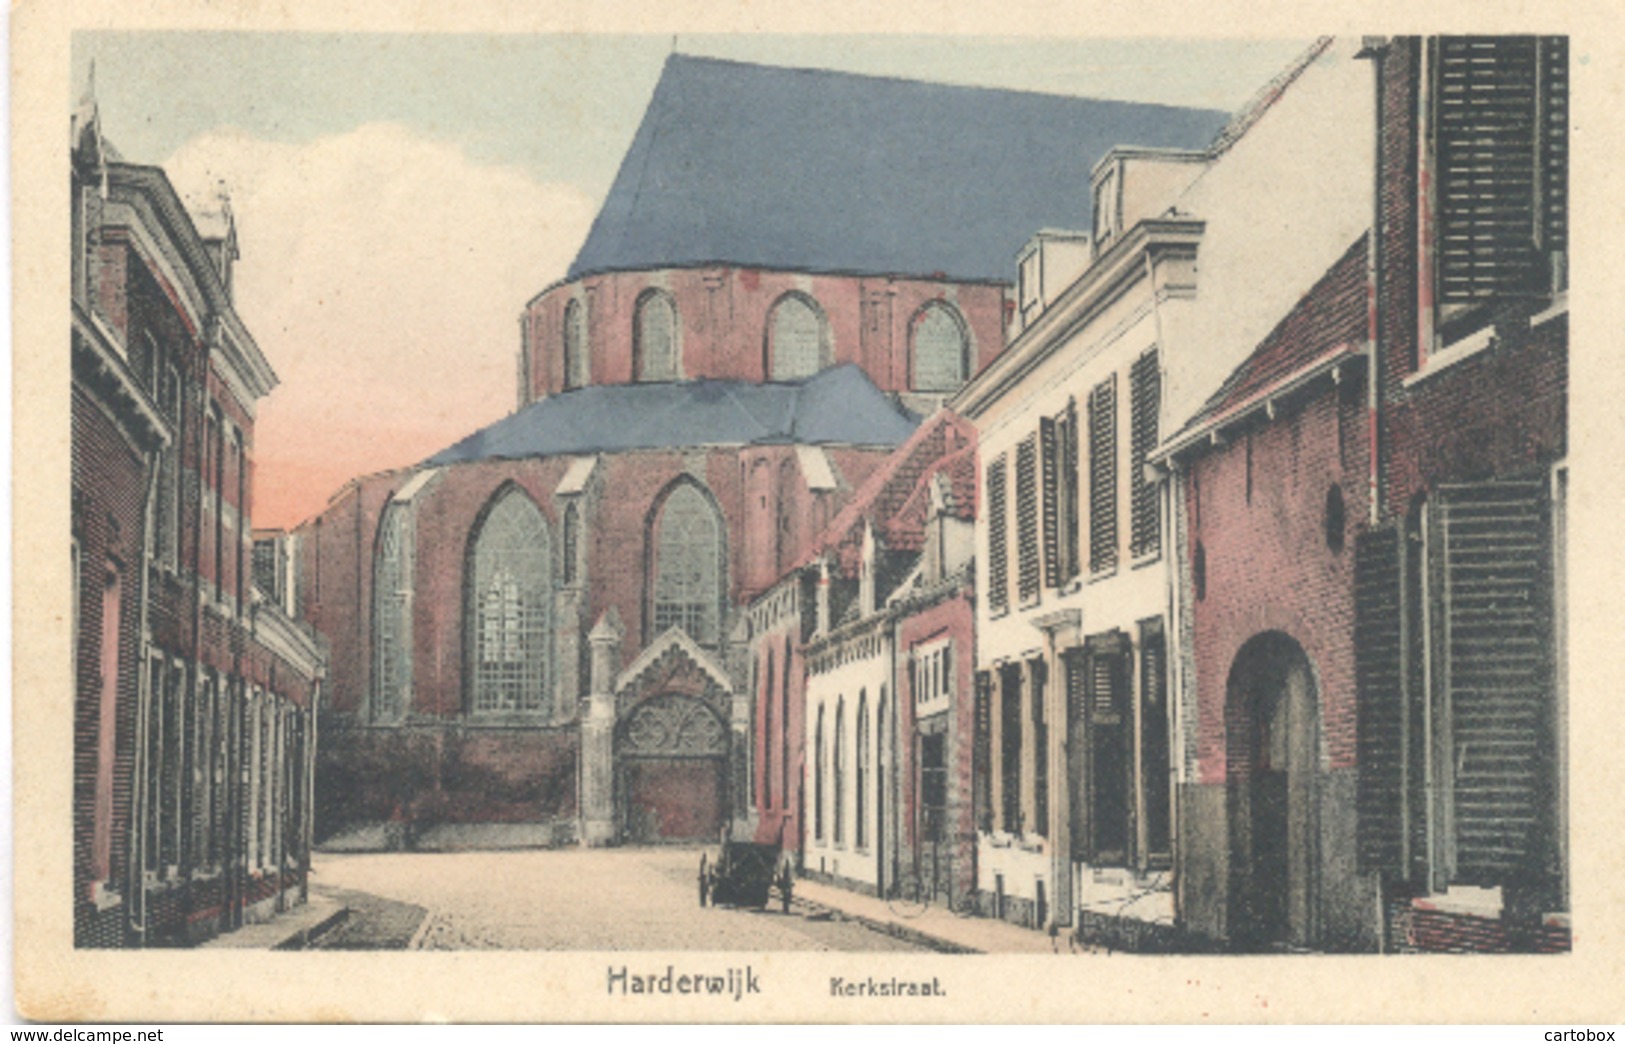 Harderwijk, Kerkstraat - Harderwijk